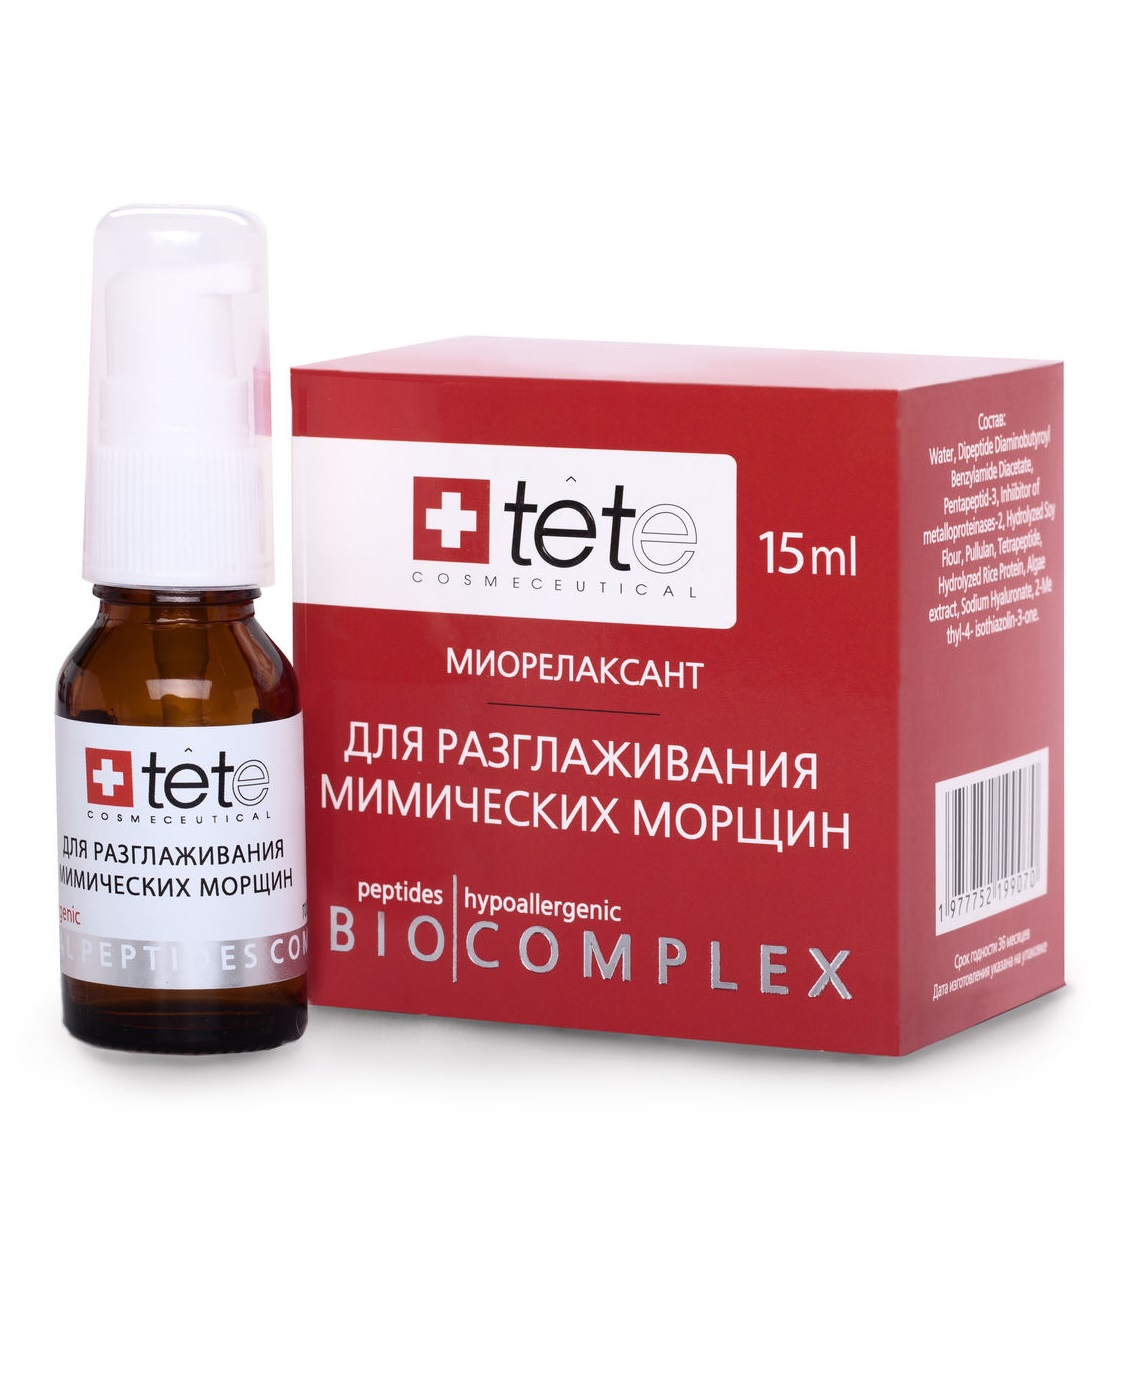 Биокомплекс-миорелаксант для разглаживания мимических морщин TETe Cosmeceutical tete cosmeceutical лосьон косметический hyaluronic acid placental extract 30